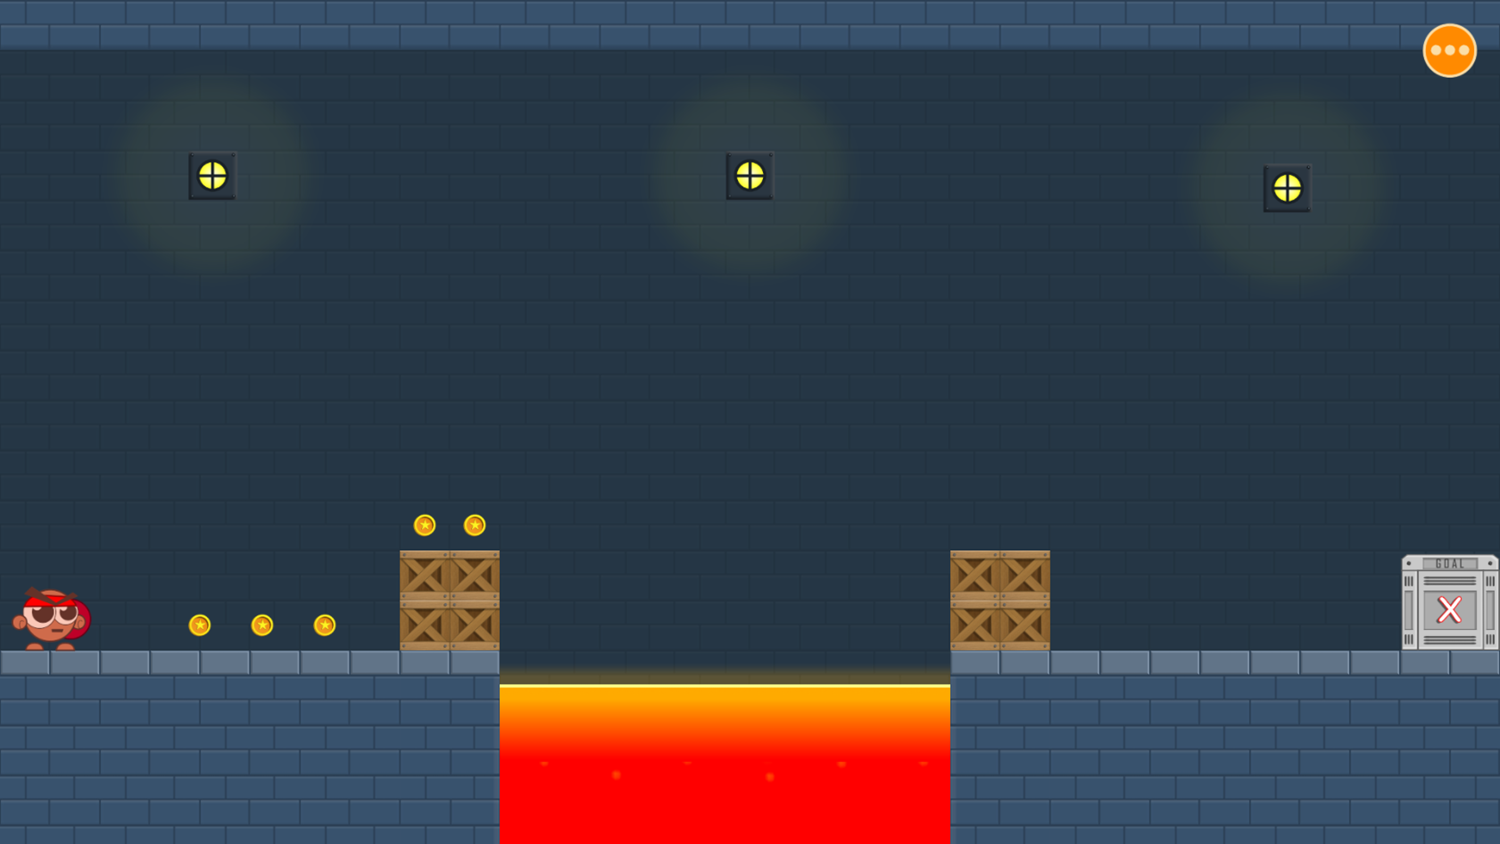 Lost Glider Game Level Start Screenshot.